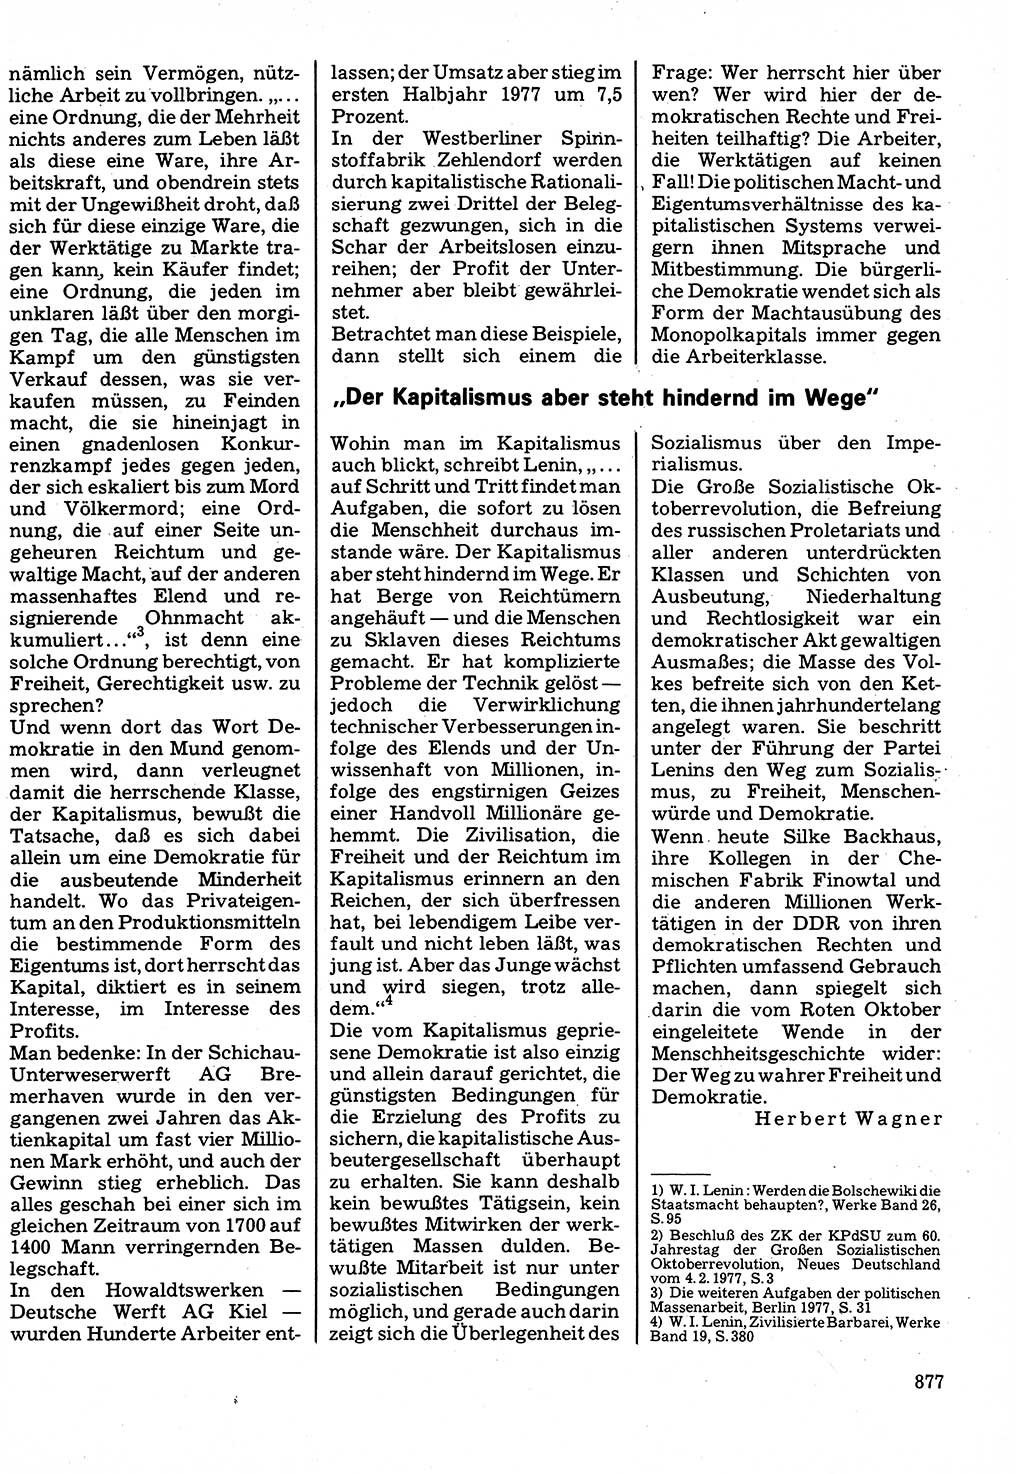 Neuer Weg (NW), Organ des Zentralkomitees (ZK) der SED (Sozialistische Einheitspartei Deutschlands) für Fragen des Parteilebens, 32. Jahrgang [Deutsche Demokratische Republik (DDR)] 1977, Seite 877 (NW ZK SED DDR 1977, S. 877)